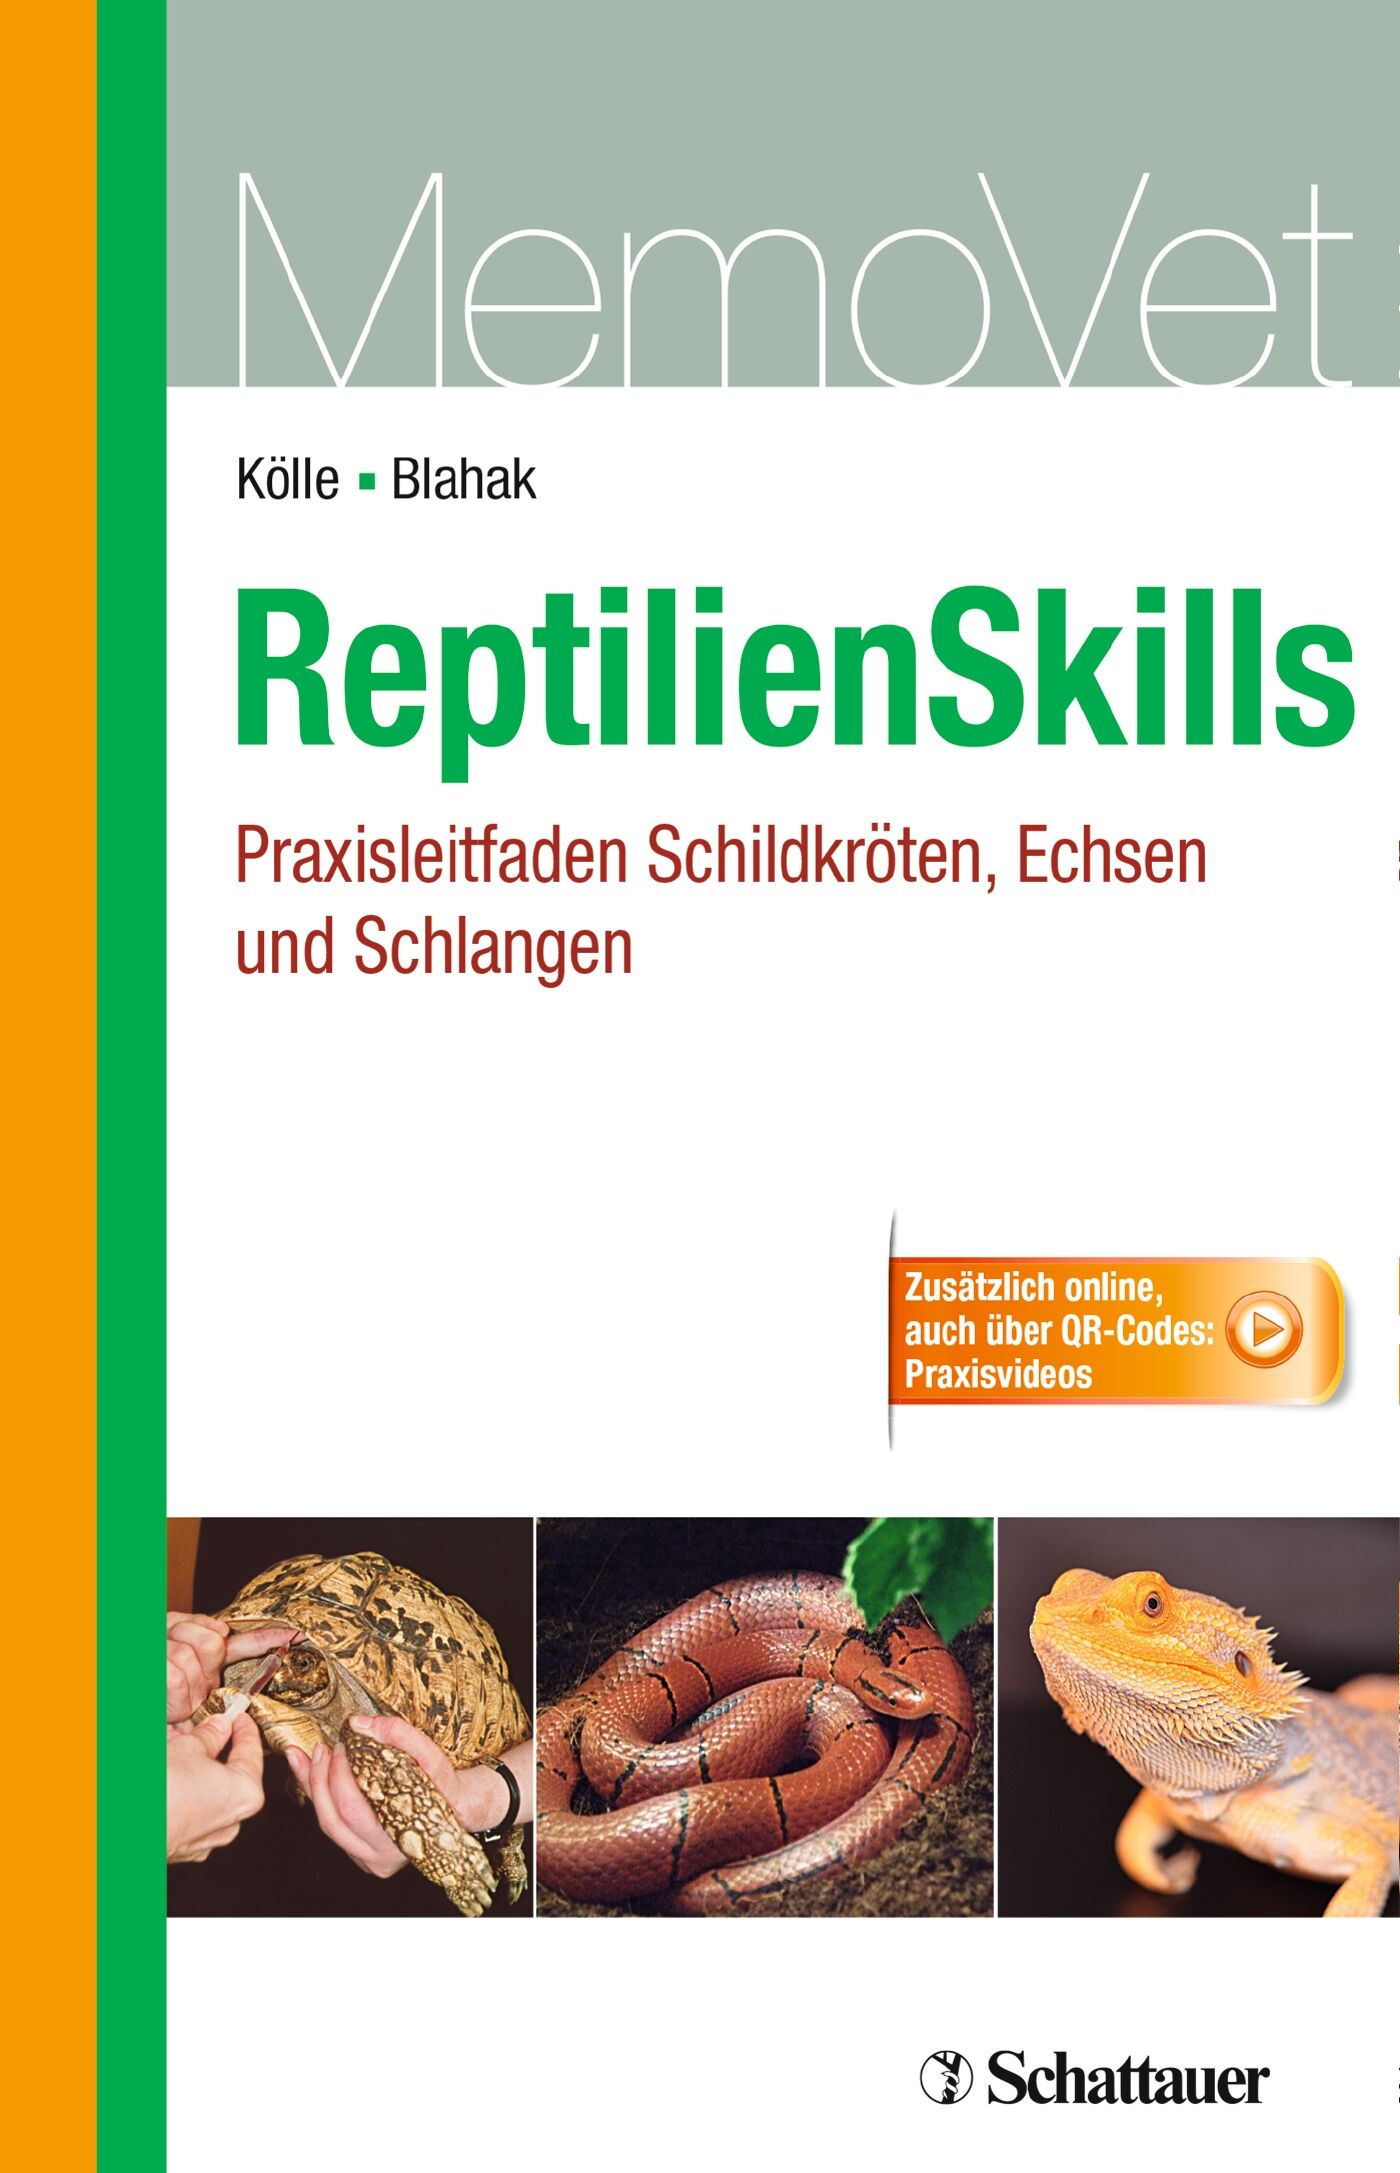 ReptilienSkills - Praxisleitfaden Schildkröten, Echsen und Schlangen, 9783794531011